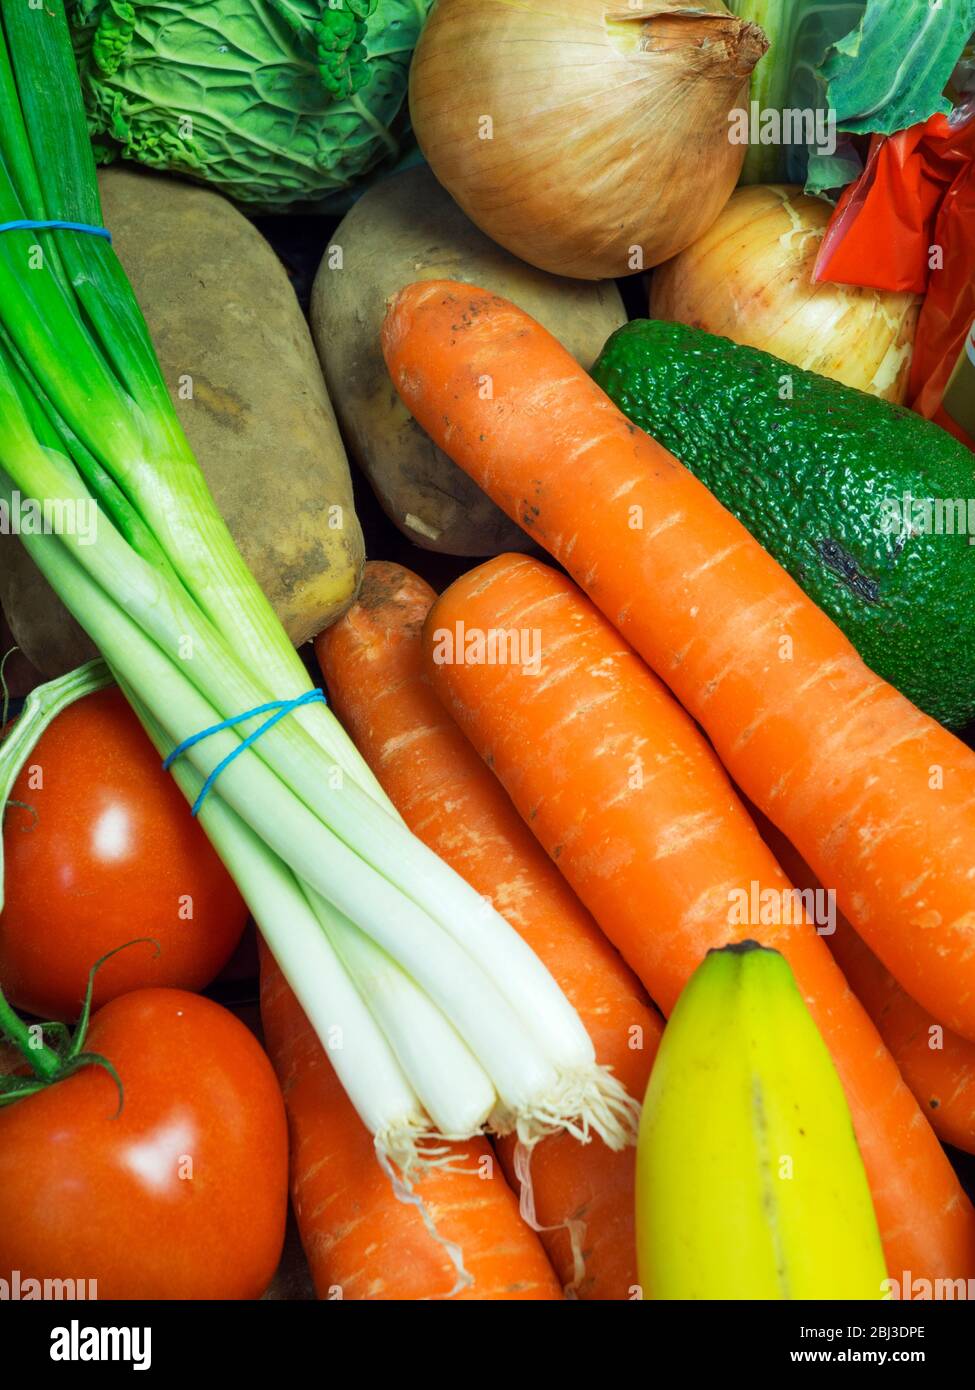 Livraison de fruits et de légumes avec des produits locaux d'un magasin agricole Banque D'Images